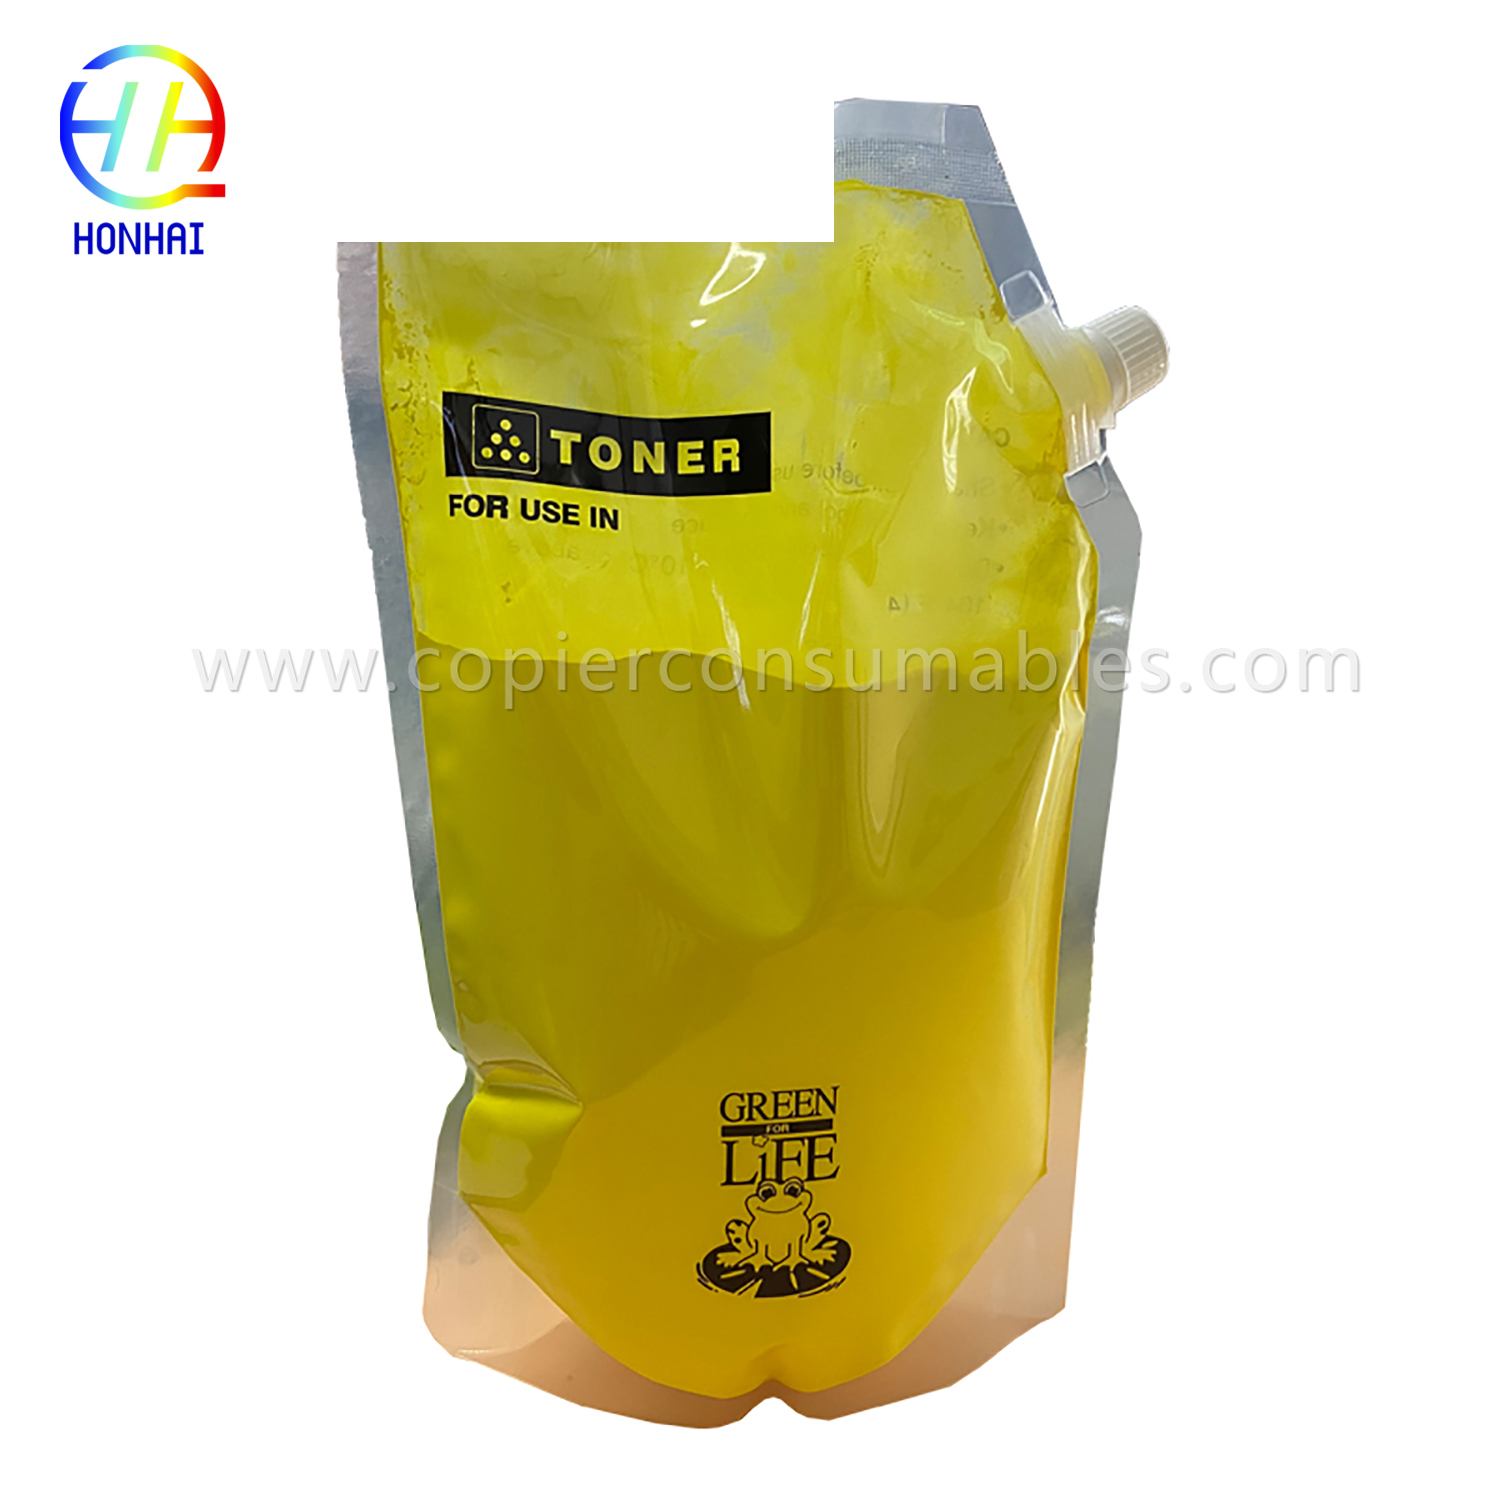 Toner Powder for Ricoh MP C2003 C3003 C3004 C3502 (841918 841919 841920 841921) (2) 拷贝